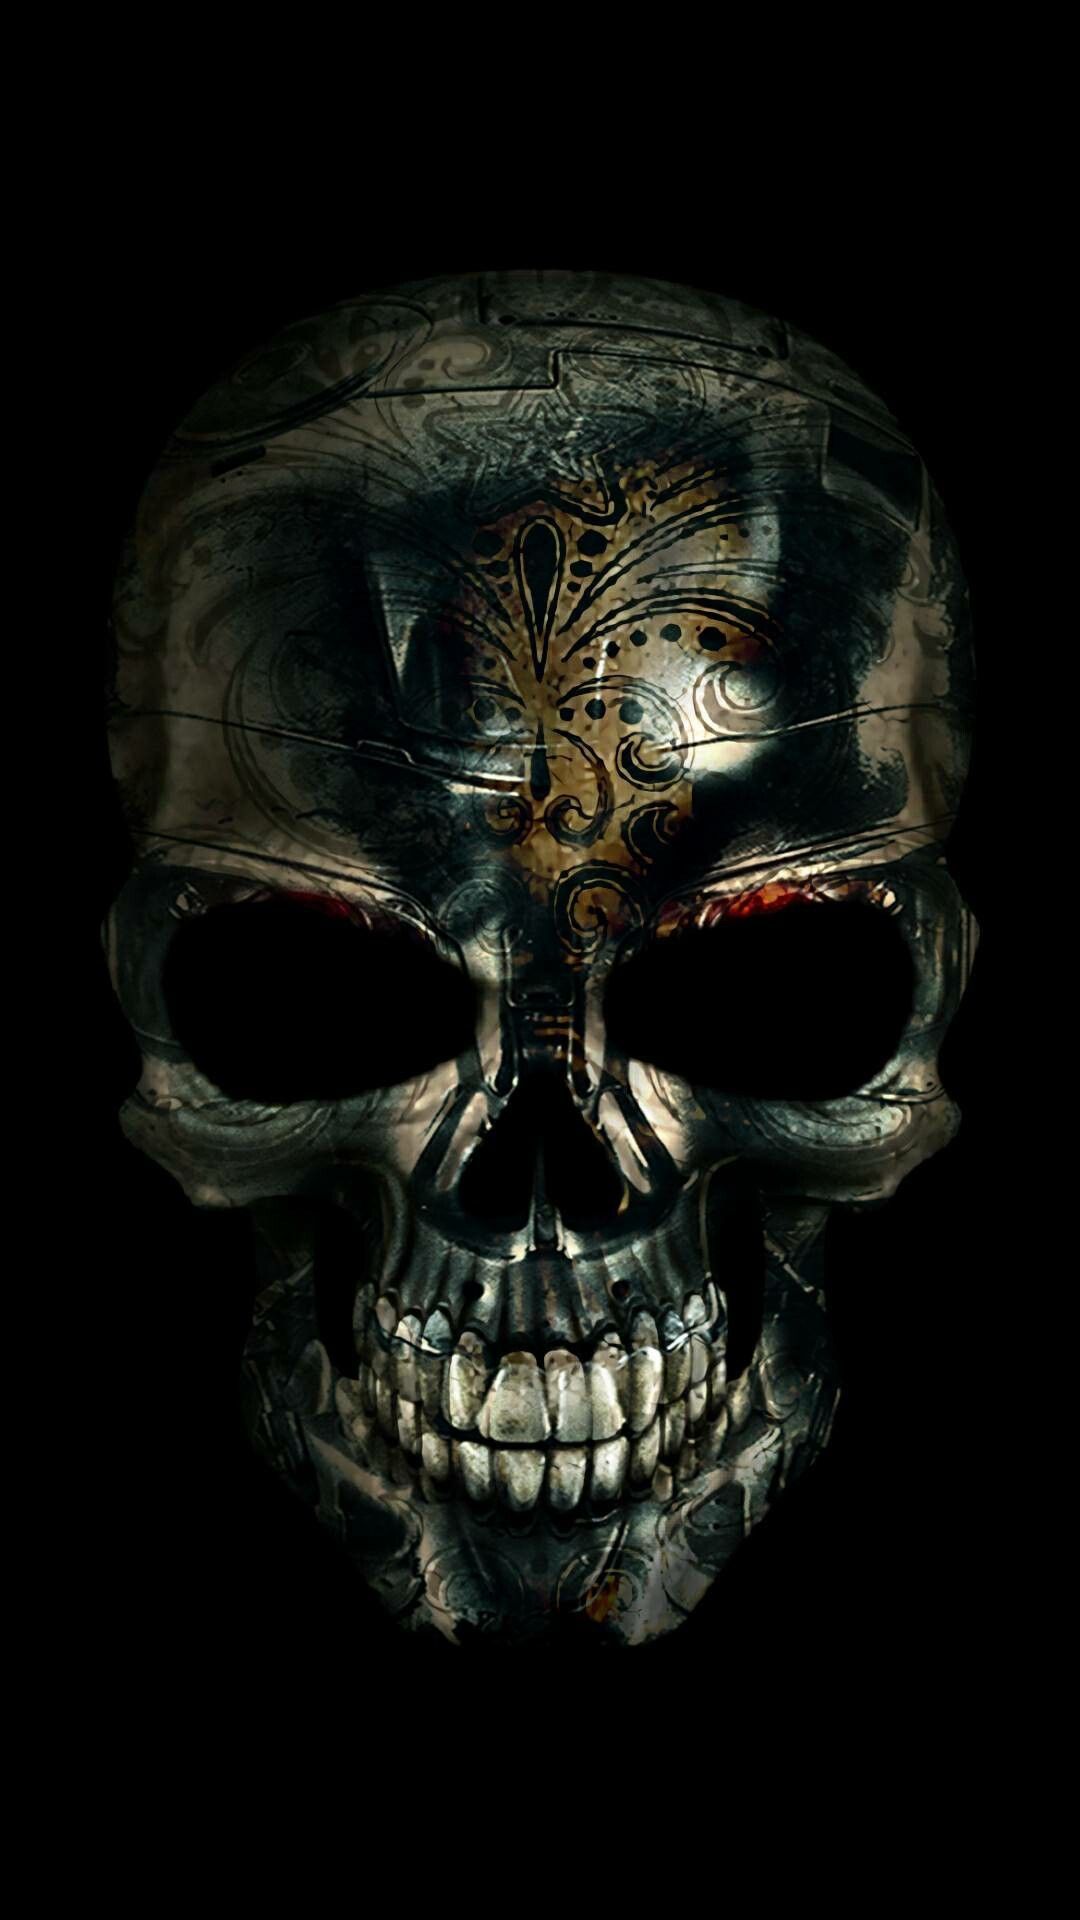 Phone Background 07. Skull wallpaper, Sugar skull wallpaper, Skull